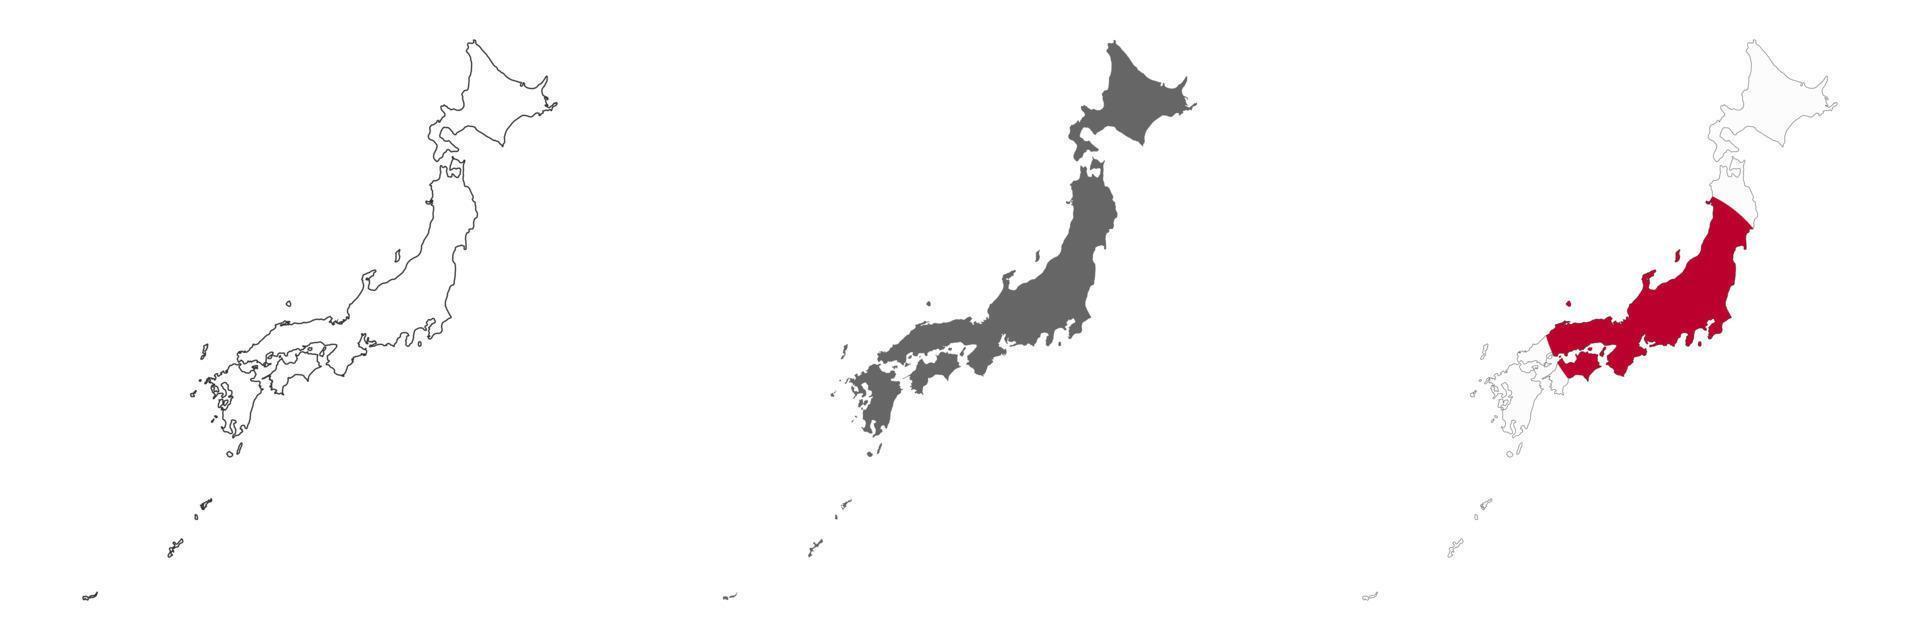 mapa altamente detalhado do japão com bordas isoladas no fundo vetor